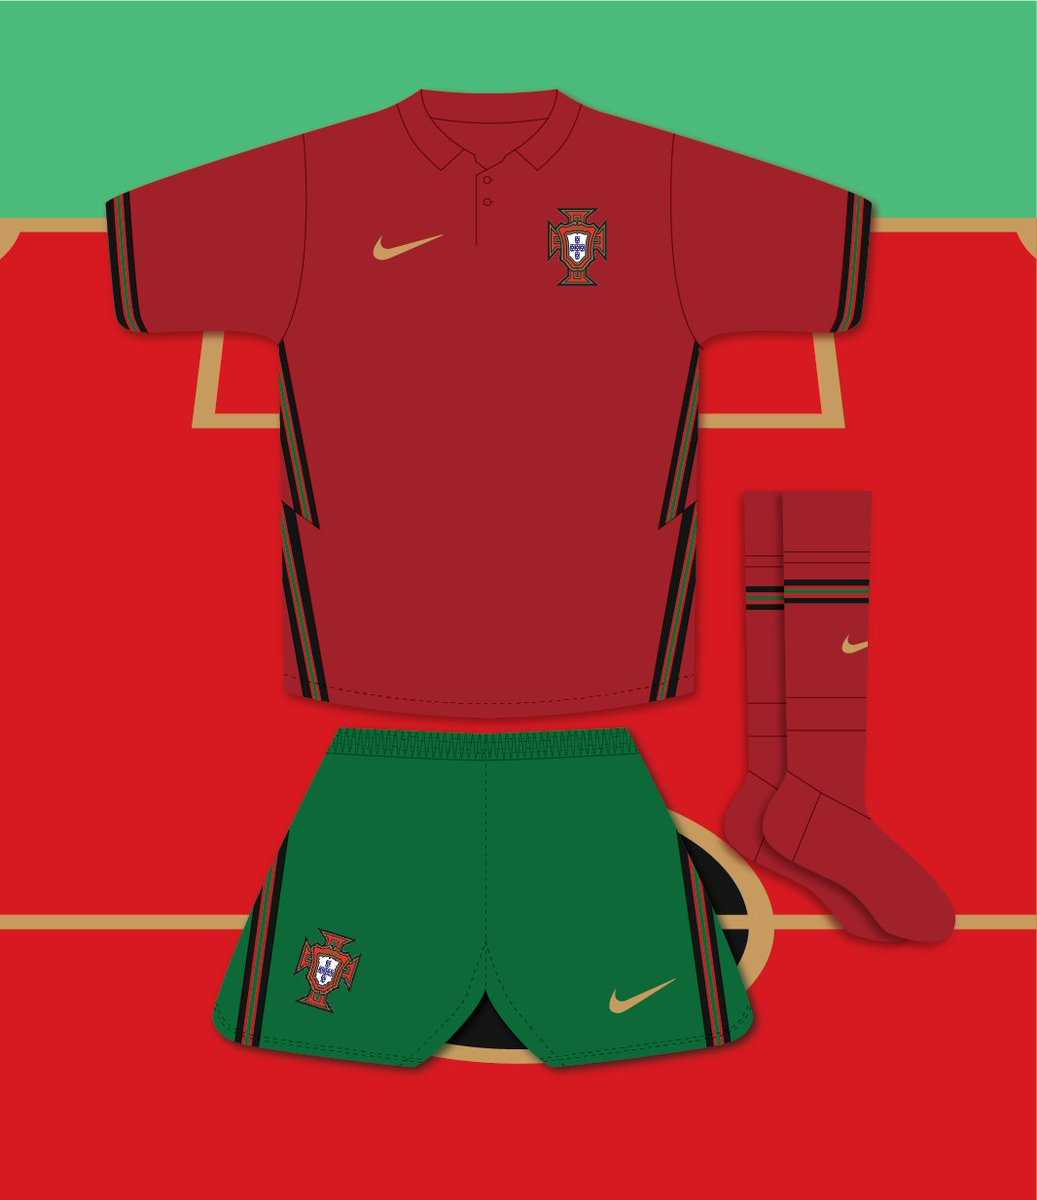 Сборная португалии по футболу 2018: состав (фото)